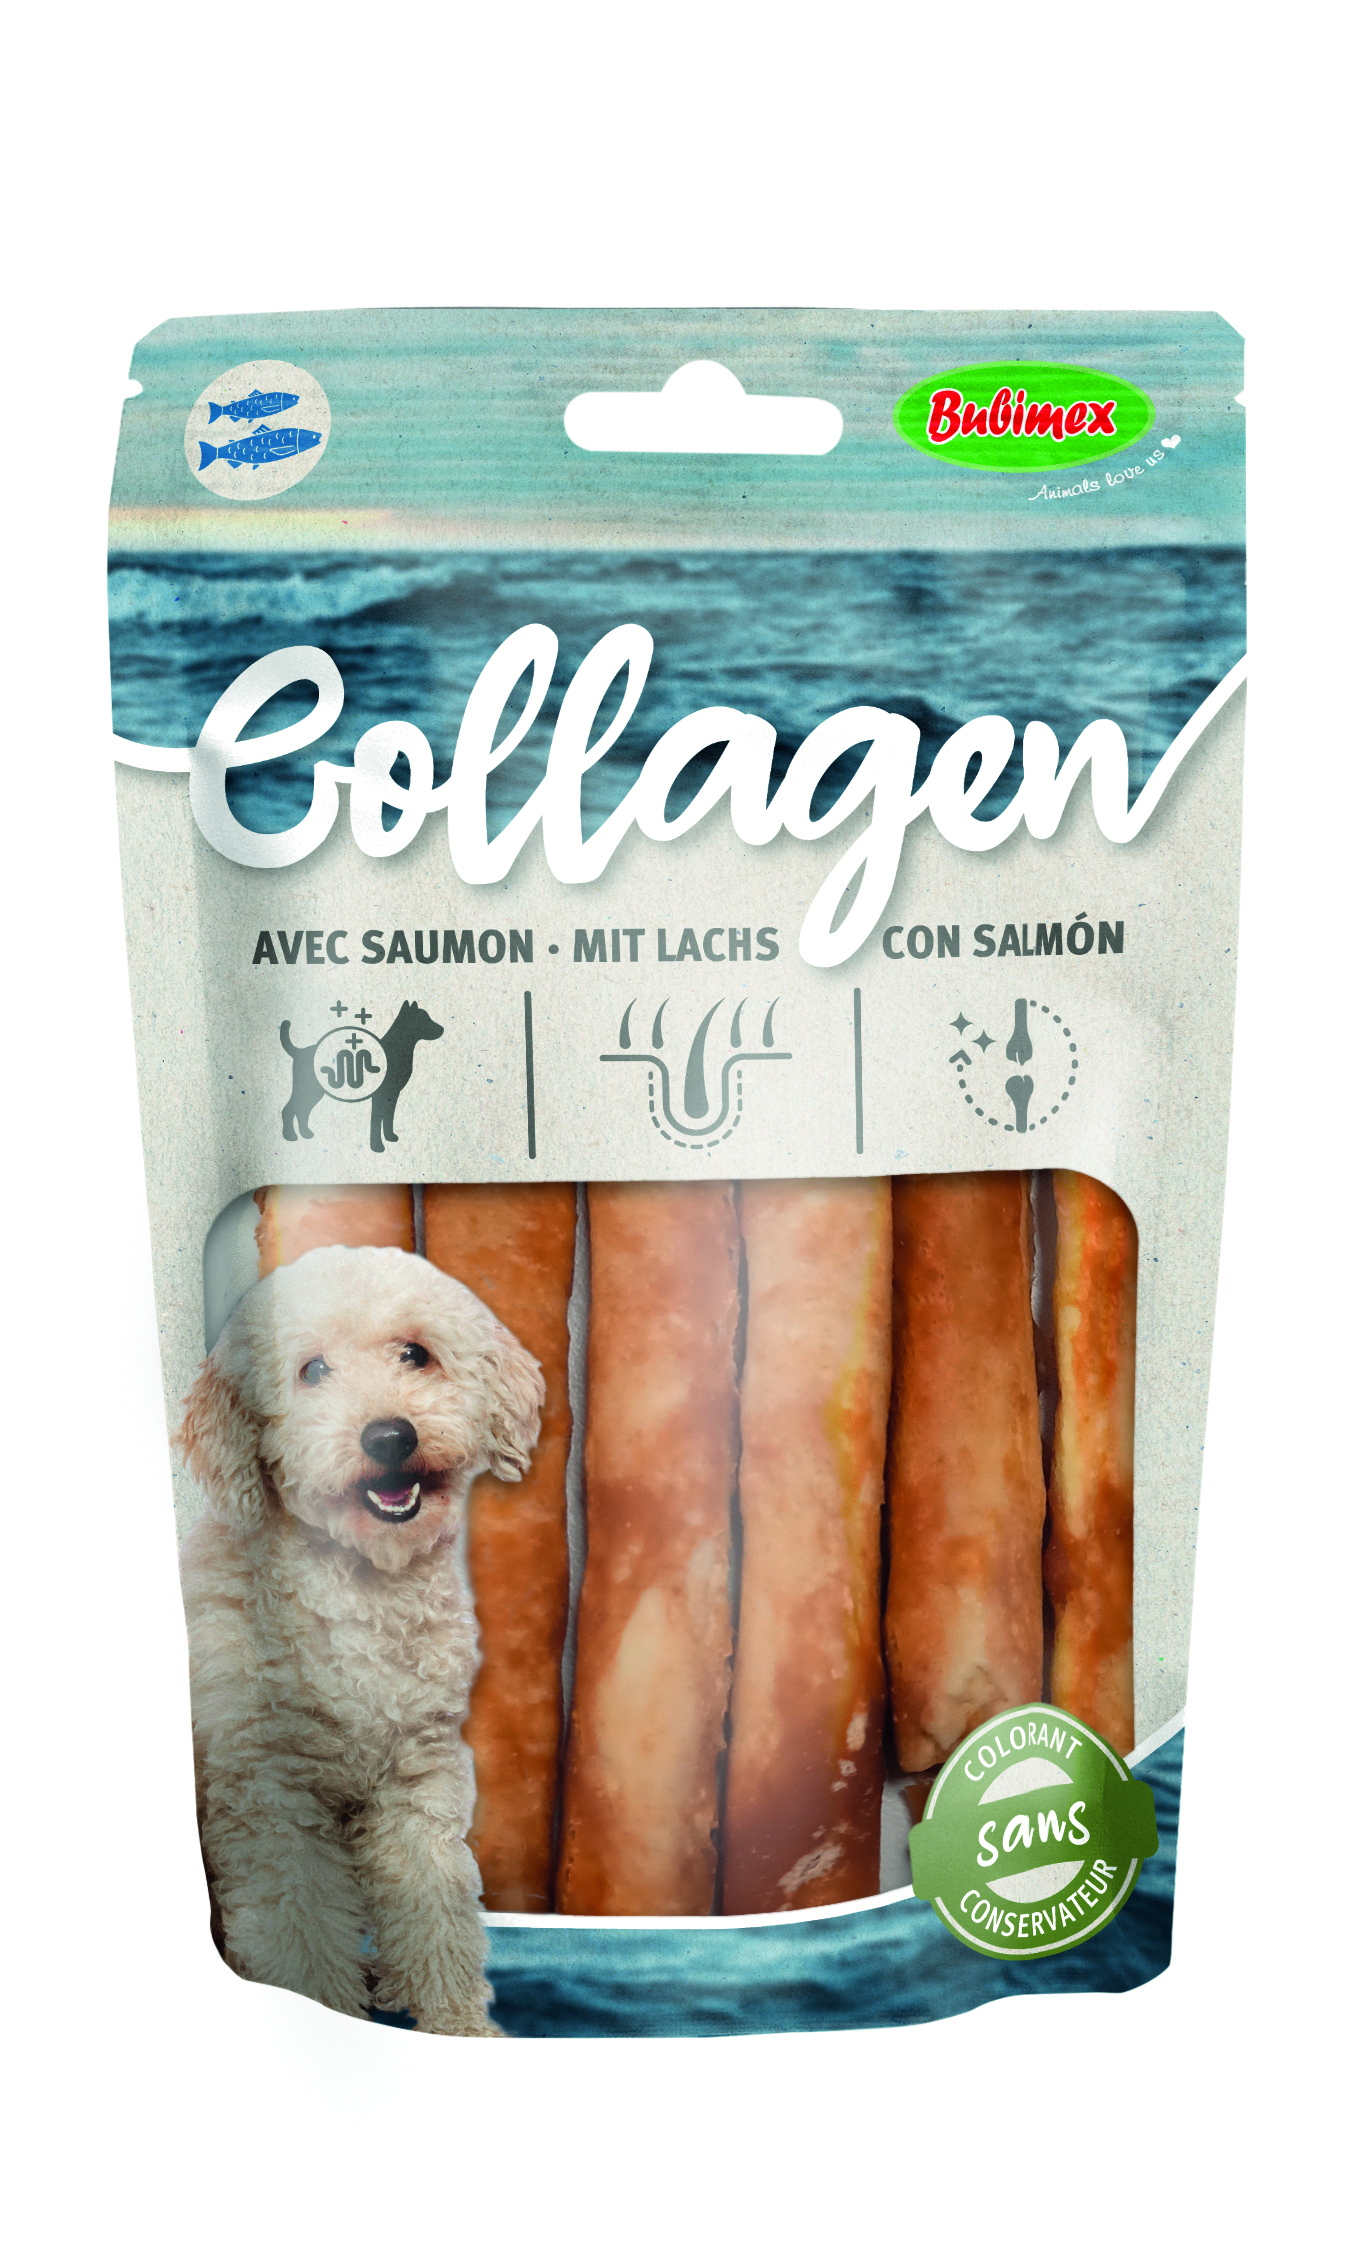 BUBIMEX Collagen Barritas de salmón para perros pequeños